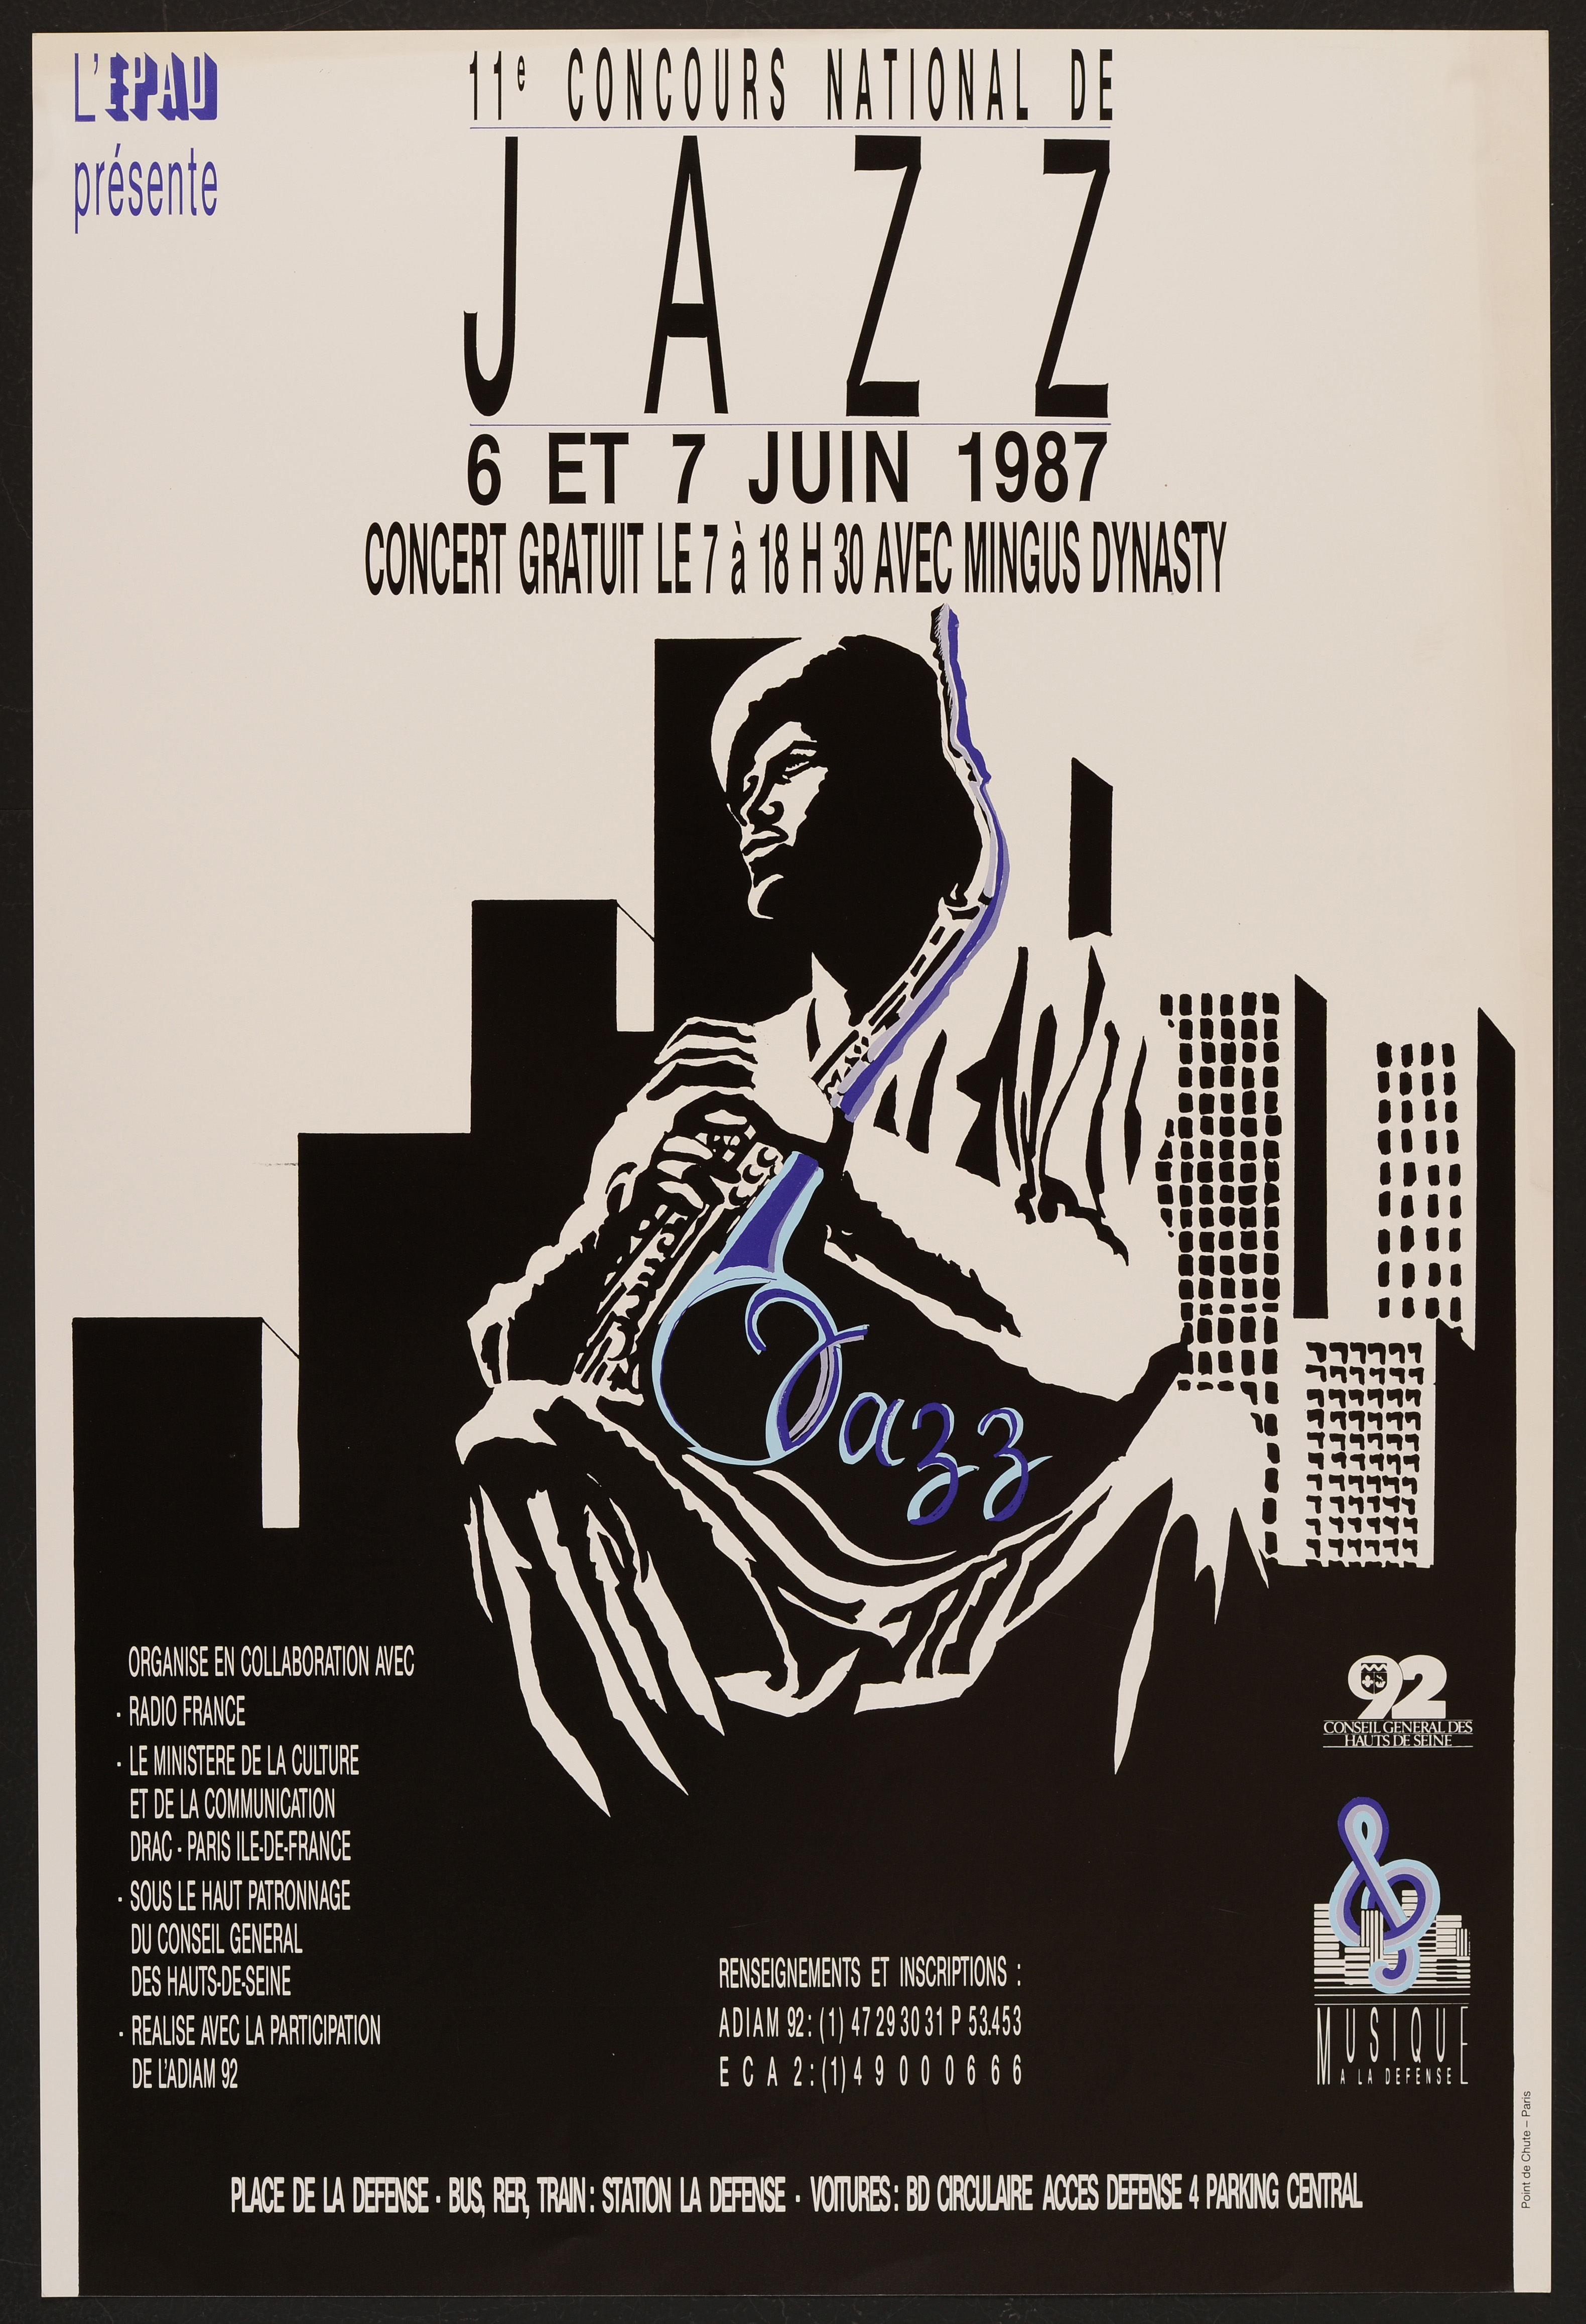 11ème Concours national de Jazz. 6 et 7 juin 1987. - Affiche ill. coul. ; 60 x 40 cm.